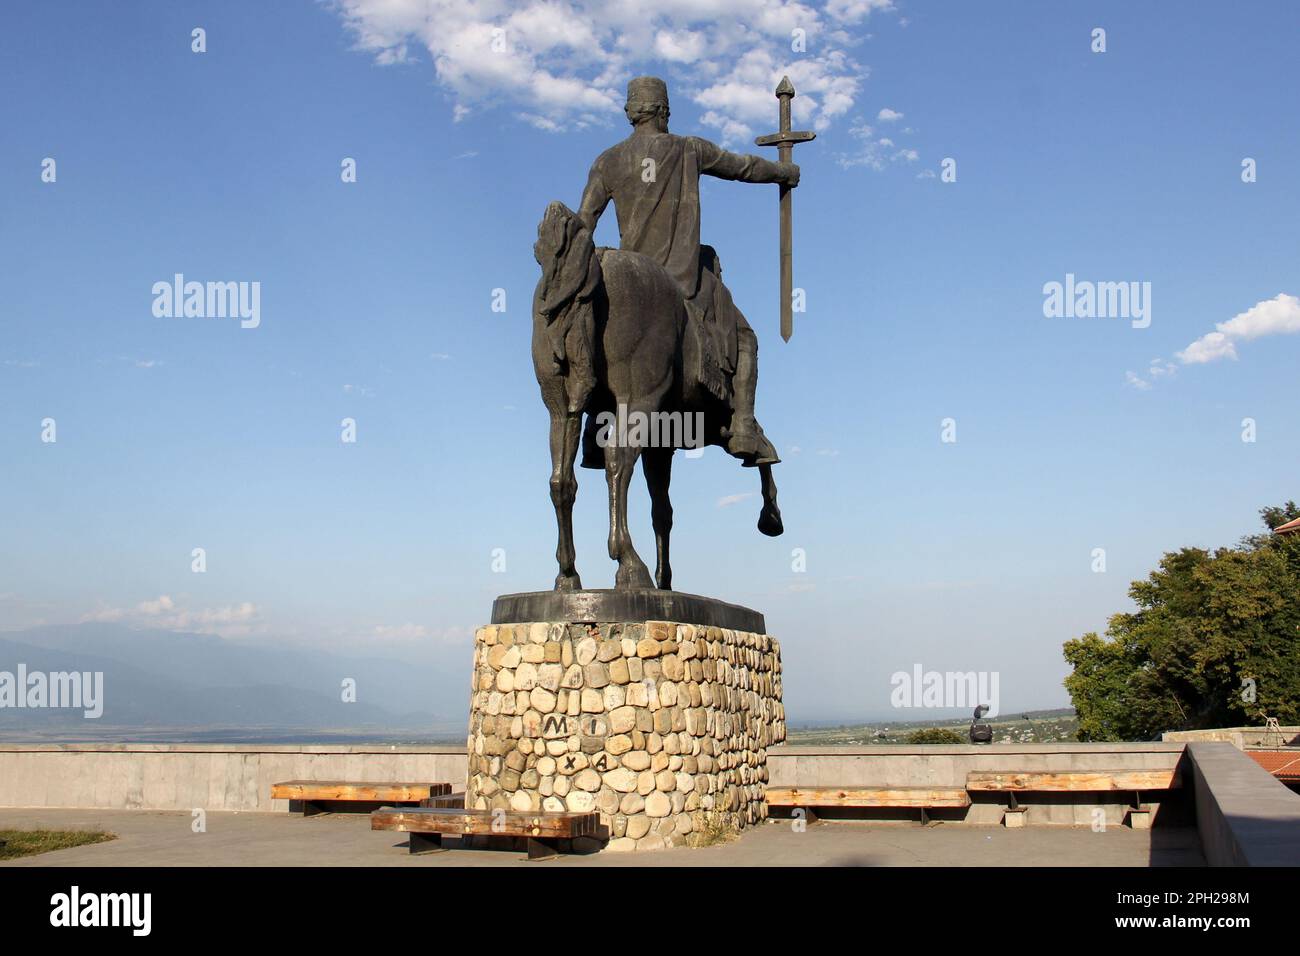 Equestrian statue of King Erekle II, aka Heraclius II, art work by Merab Merabishvili, created in 1971, Telavi, Georgia Stock Photo